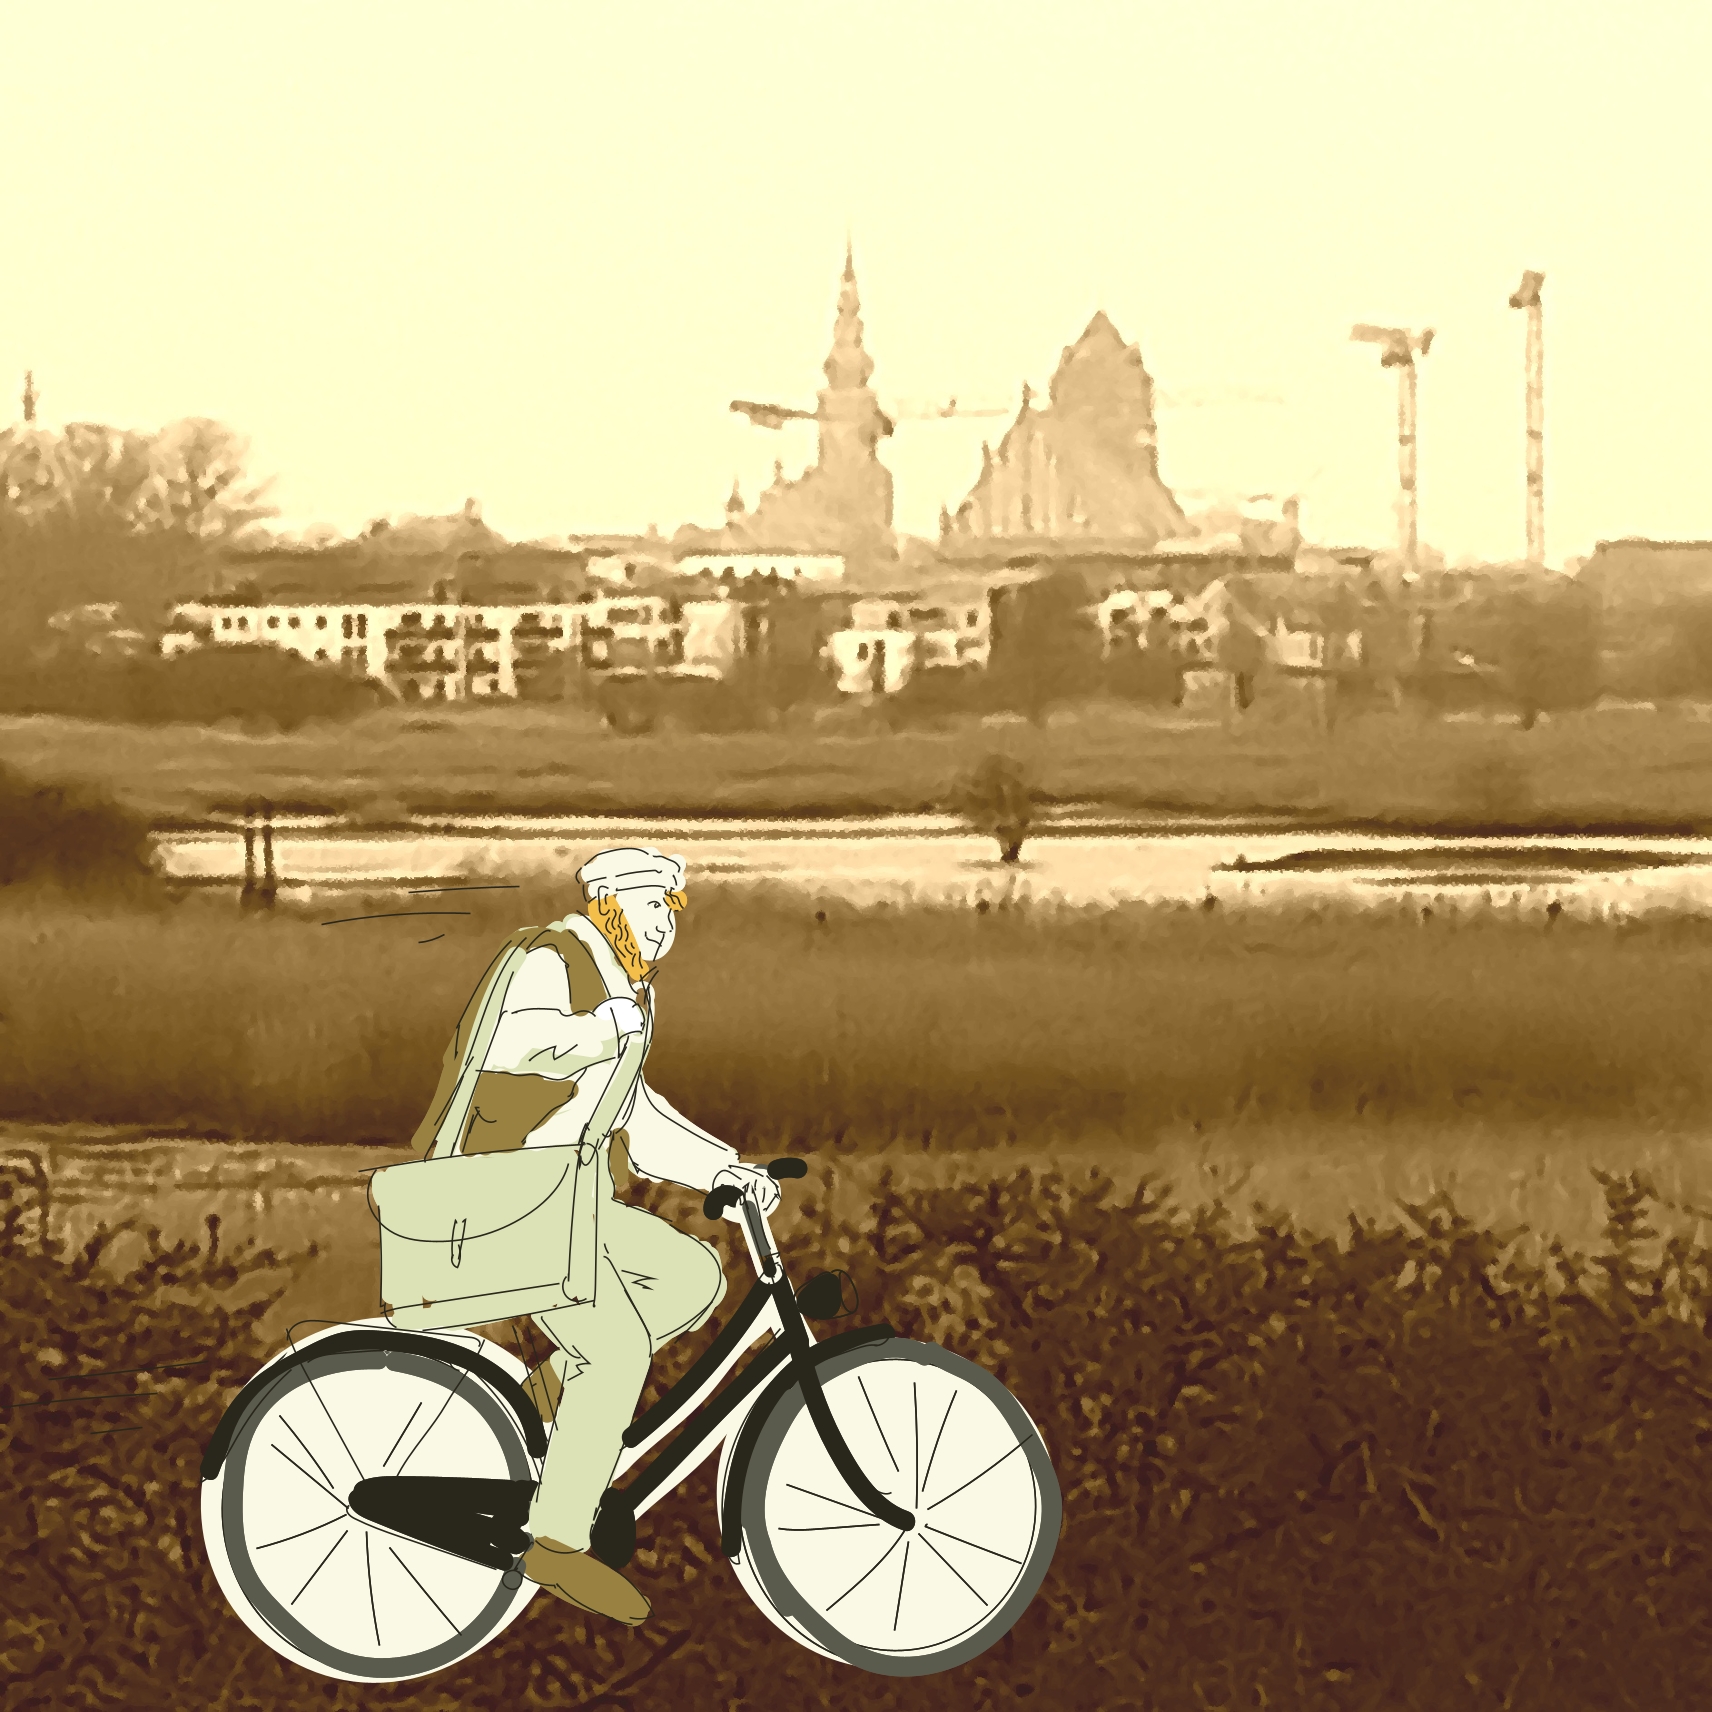 Stadtsilhouette von greifswald in Sepiatönen mit Zeichnung eines fiktiven Caspar David Friedrich auf einem Fahrrad